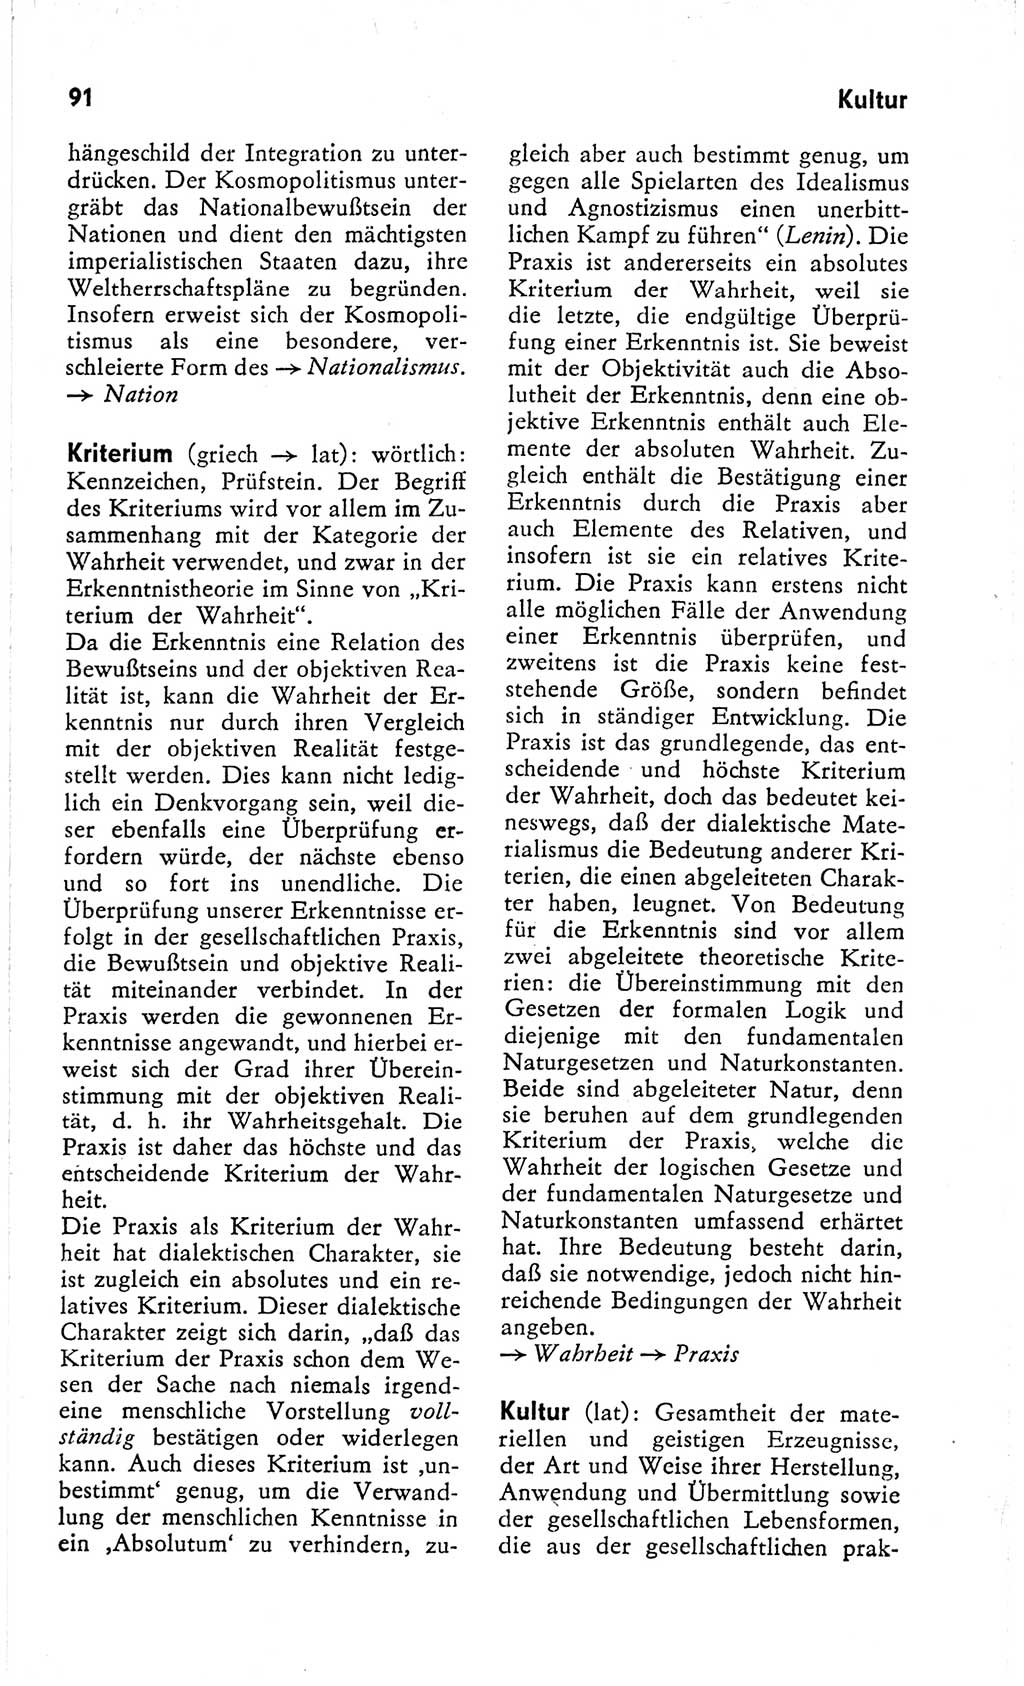 Kleines Wörterbuch der marxistisch-leninistischen Philosophie [Deutsche Demokratische Republik (DDR)] 1966, Seite 91 (Kl. Wb. ML Phil. DDR 1966, S. 91)